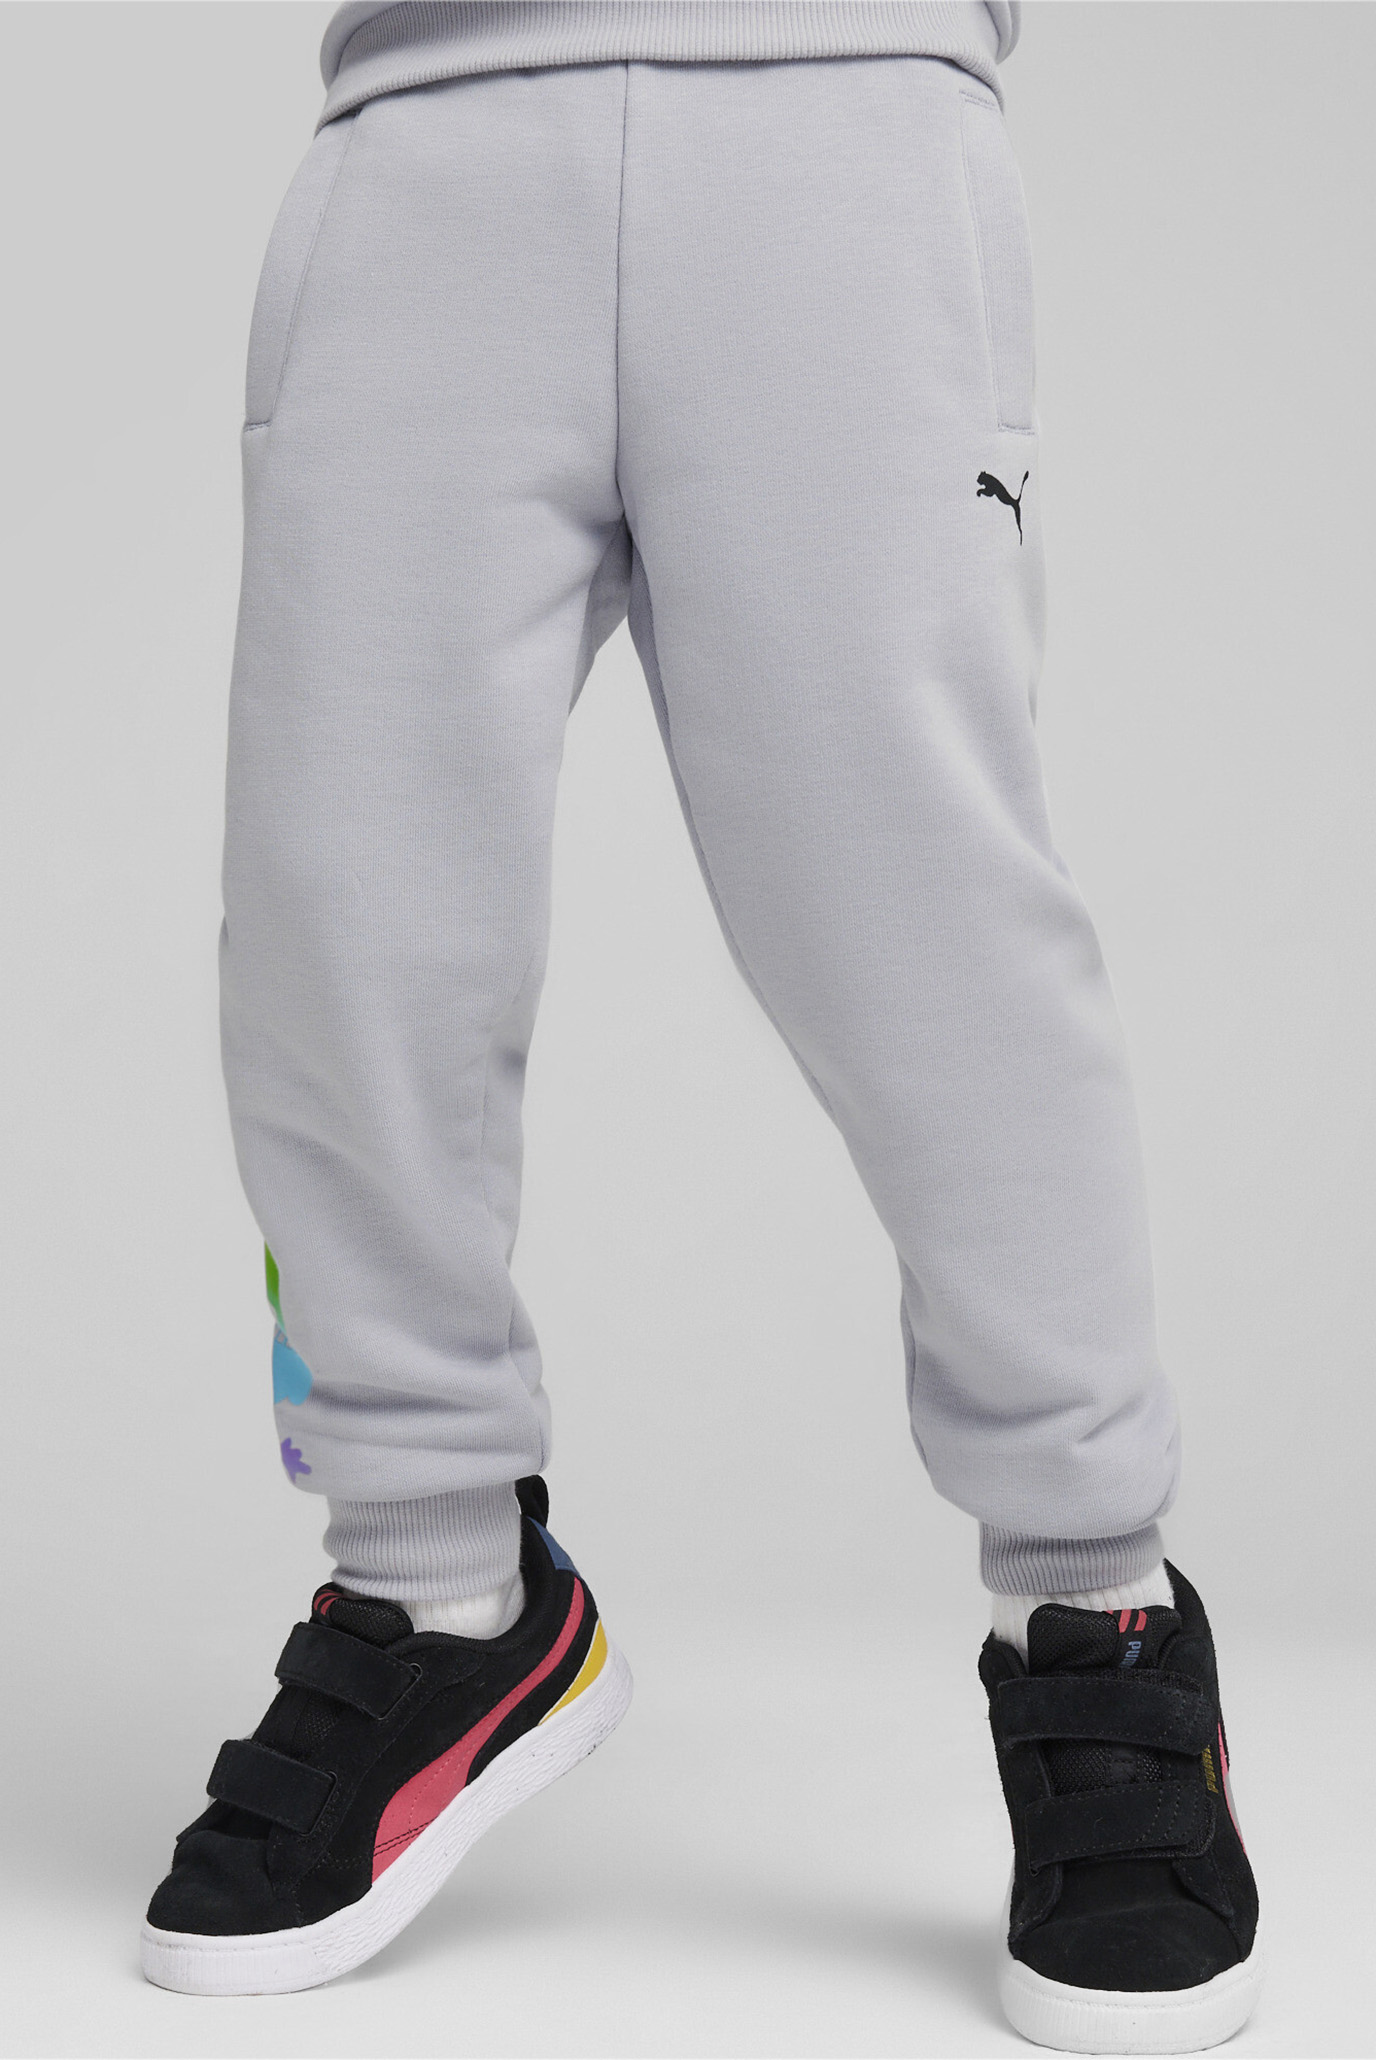 Дитячі світло-сірі спортивні штани PUMA x TROLLS Kids' Sweatpants 1